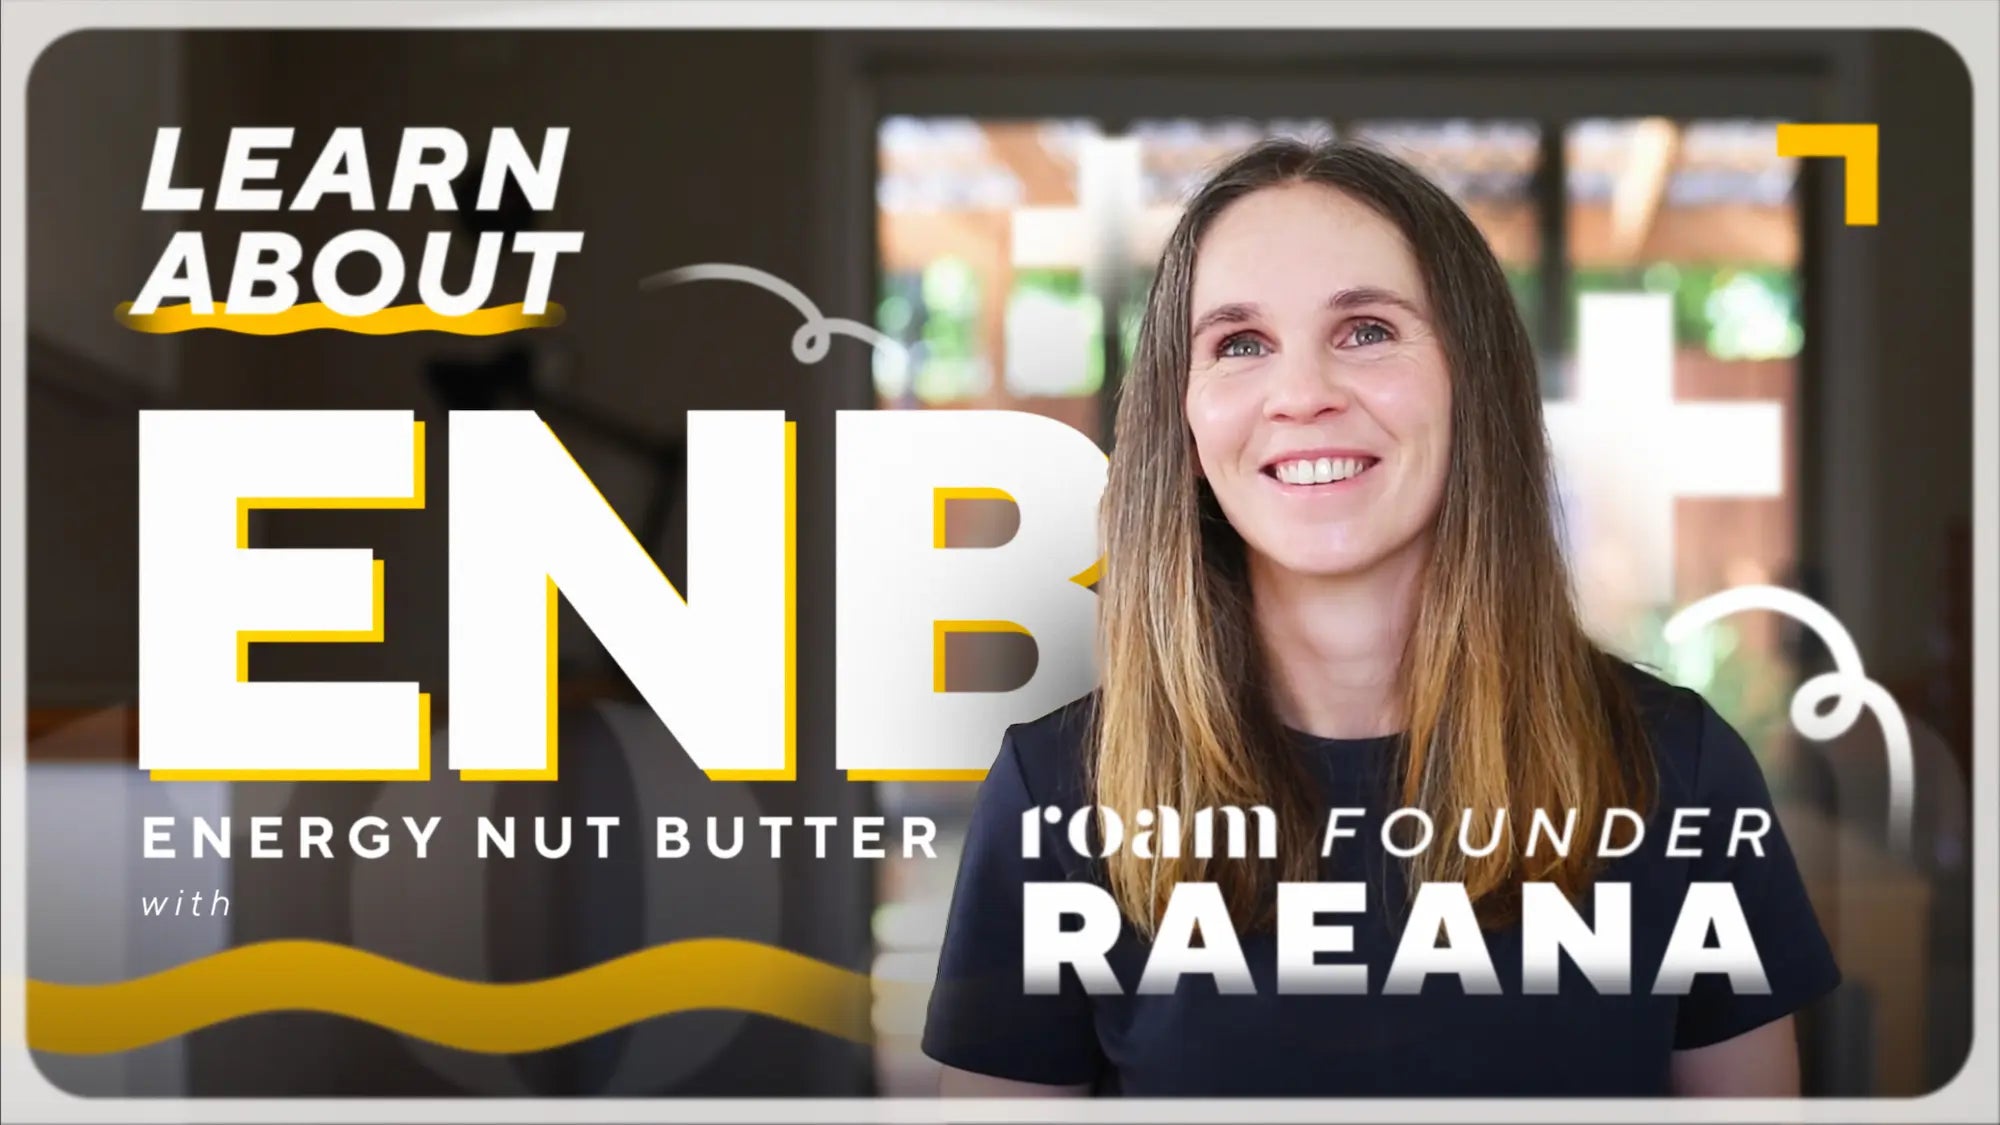 Roam Founder explaining how to use Roam Energy Nut Butter